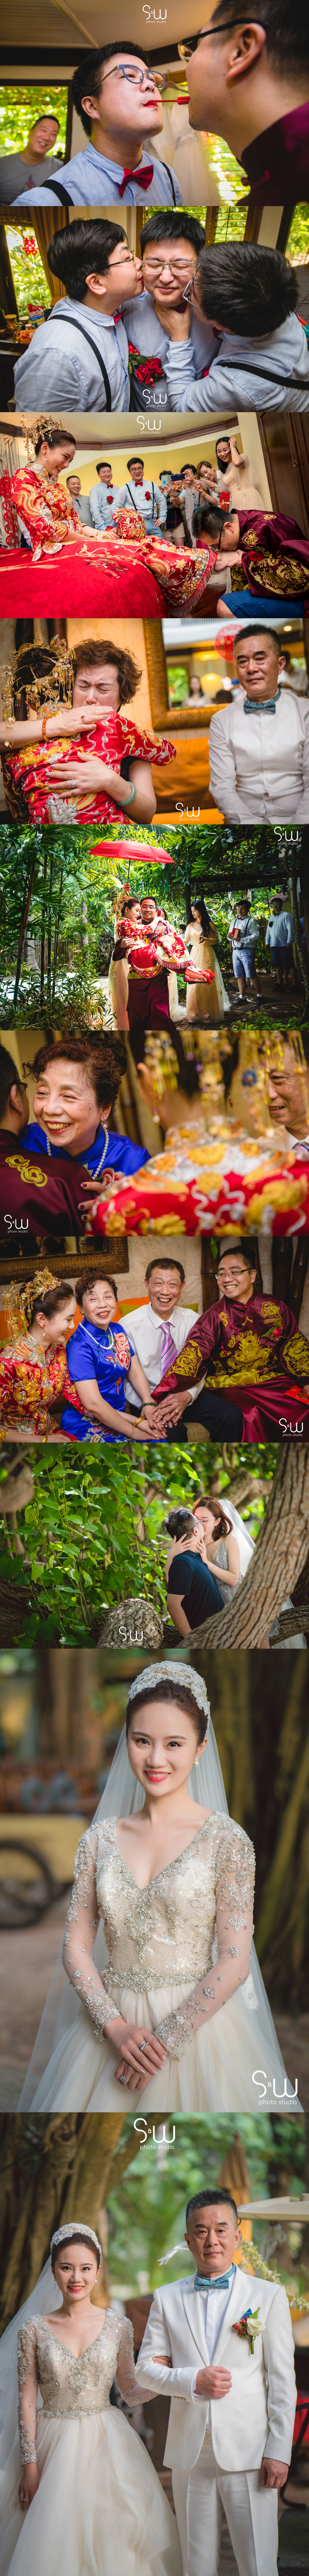 婚禮攝影,泰國甲米岩洞婚禮 Rayavadee,海外婚禮